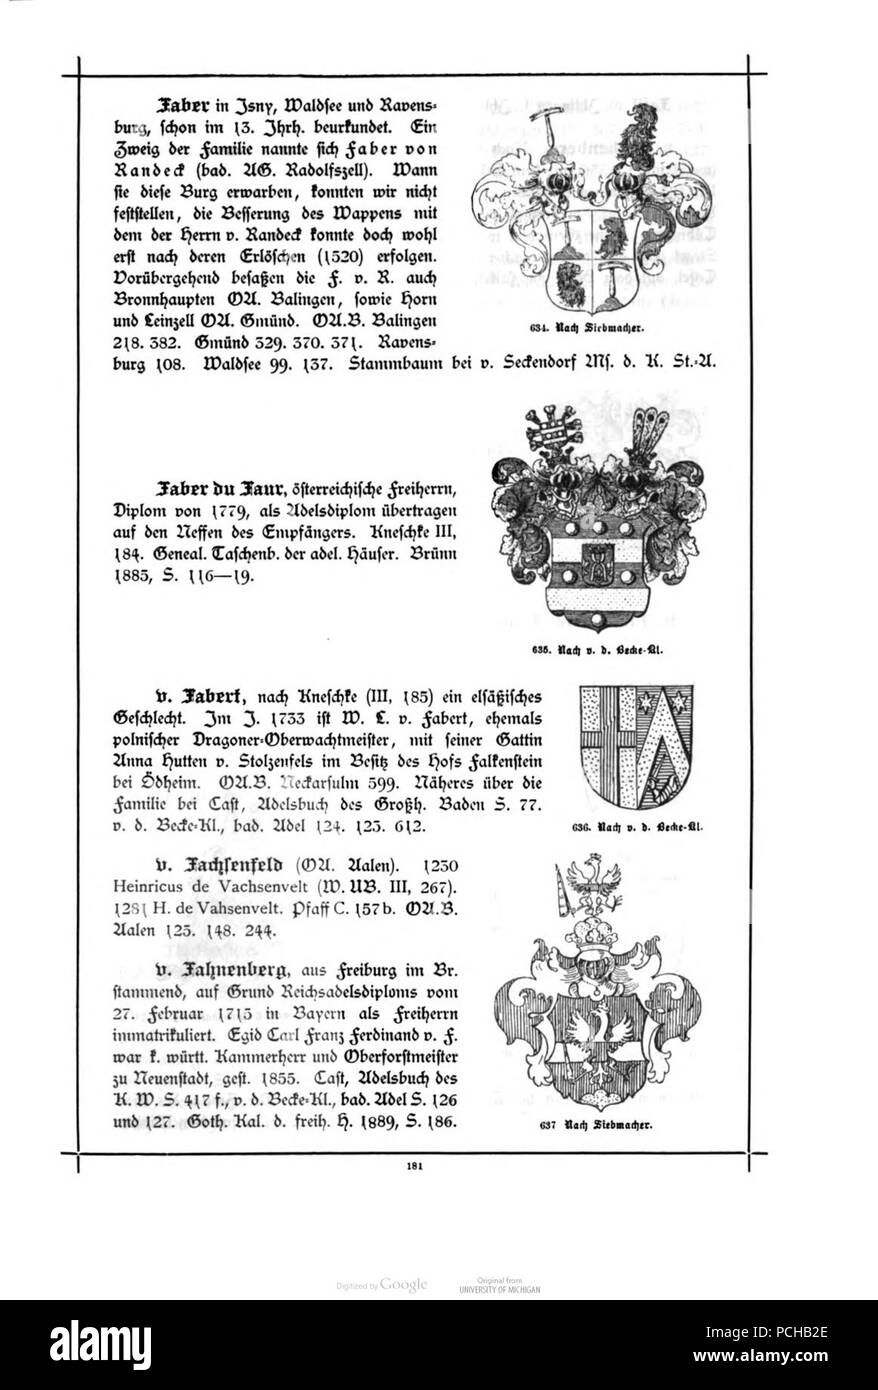 Alberti Wuerttembergisches Adels- und Wappenbuch 0181. Stockfoto